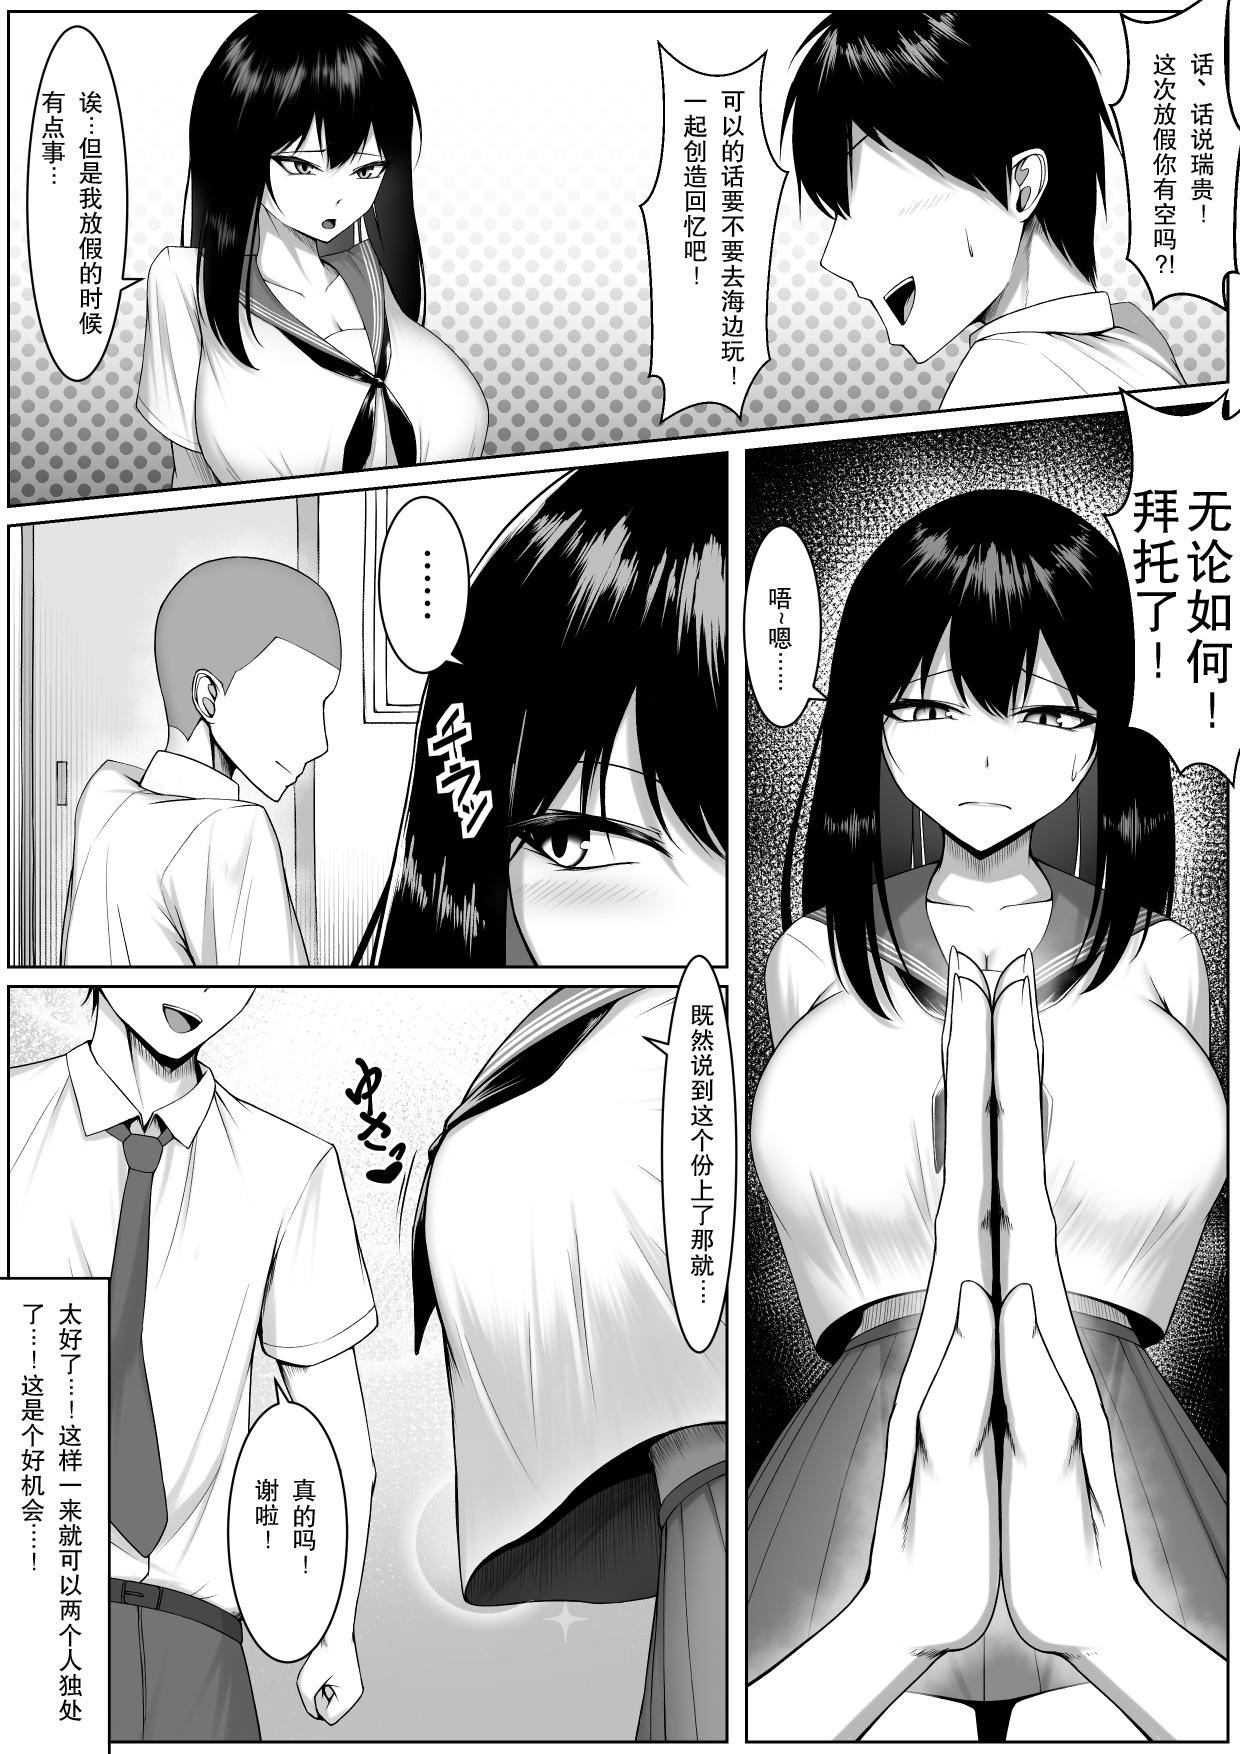 Masturbate 10-nen no Koi Yori Isshuukan no Sei 2 - Original Fucking Girls - Page 4